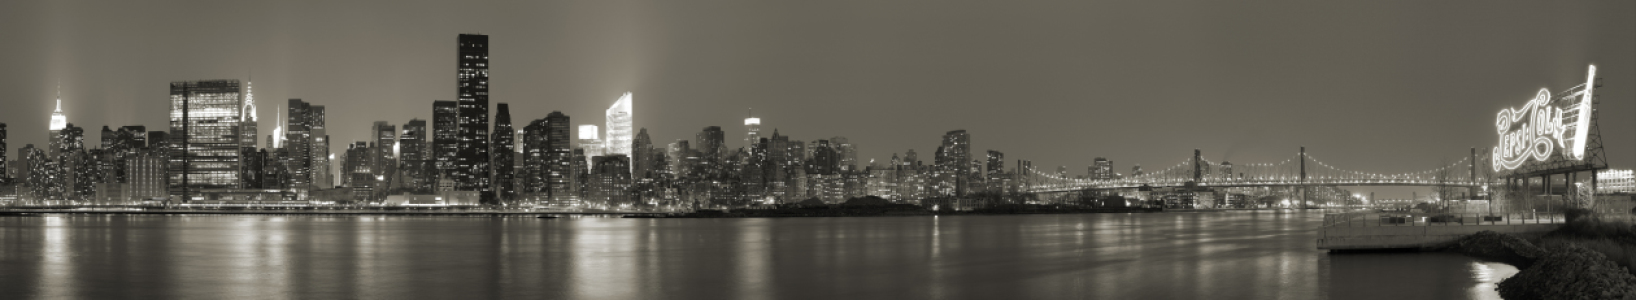 Bild-Nr: 10661670 Manhattan Skyline (Panorama) b/w Erstellt von: BvuPhotography